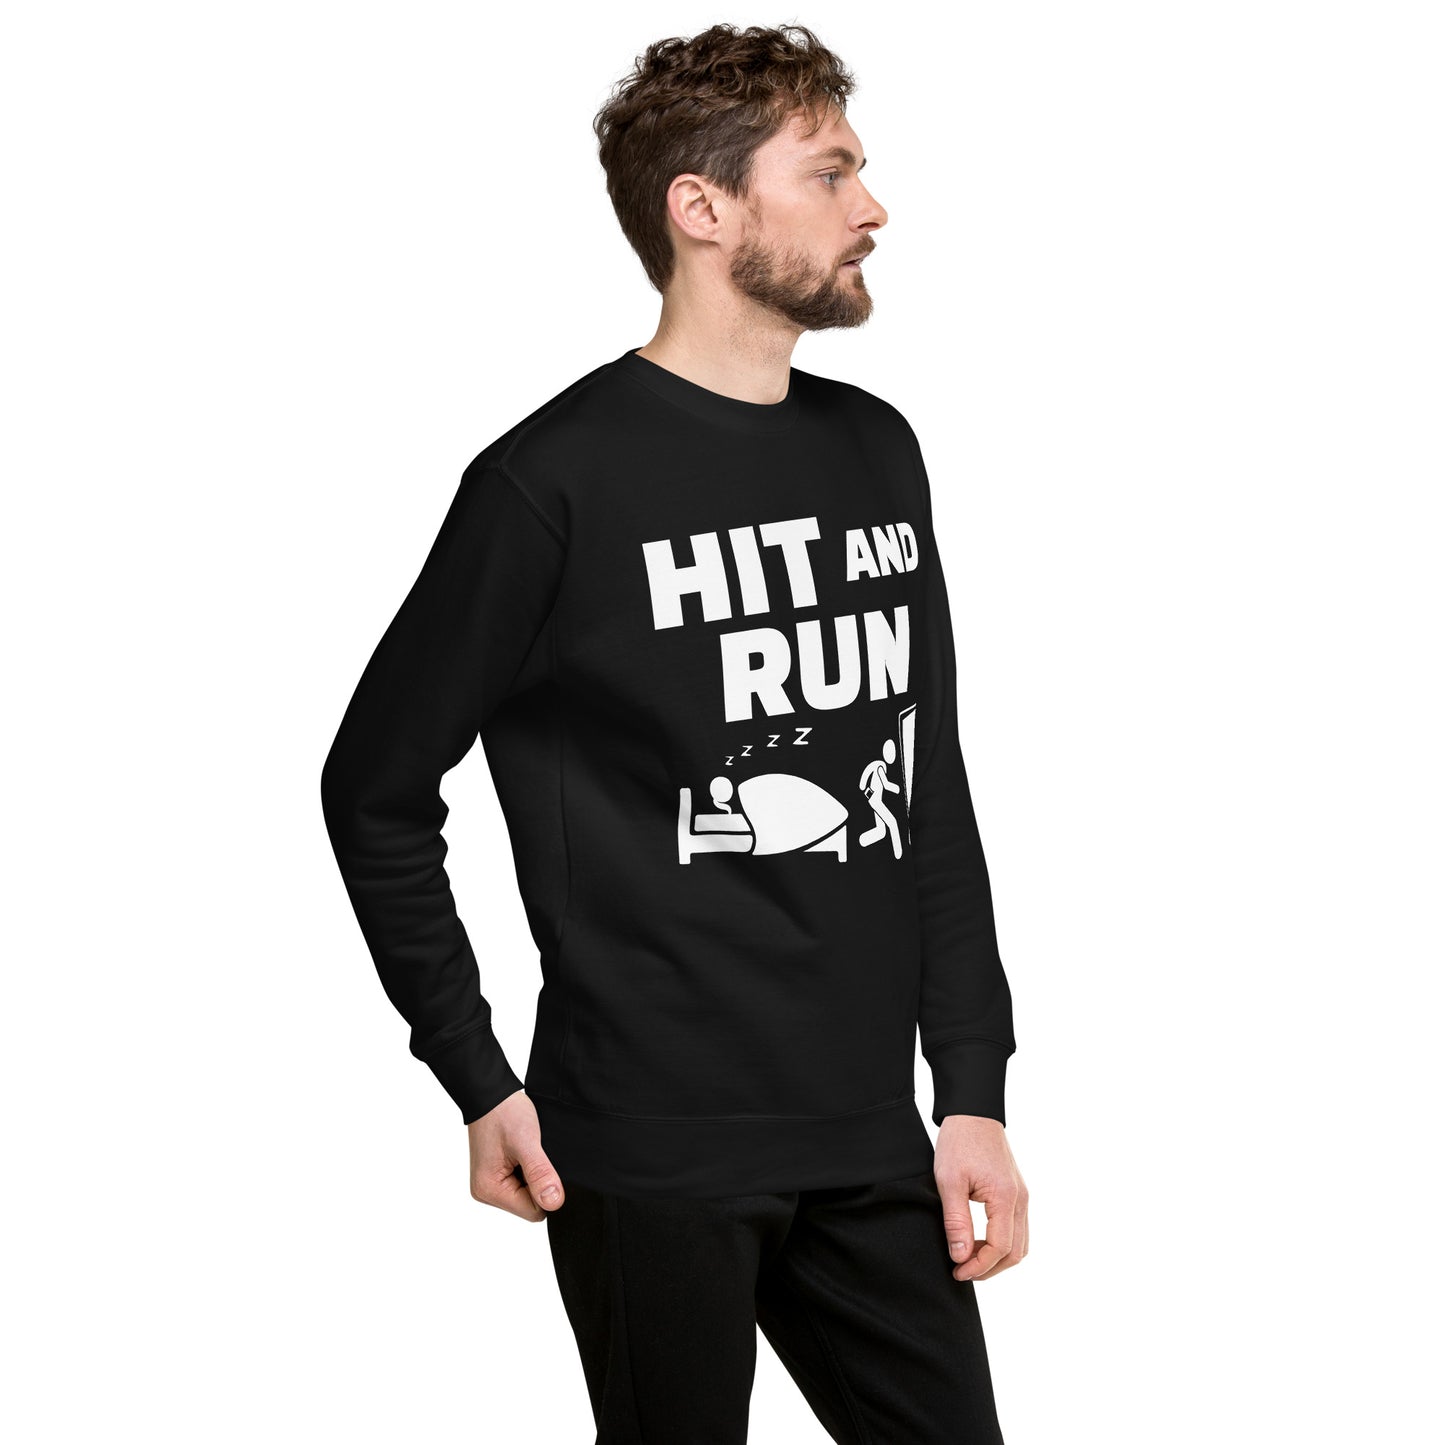 Hit And Run Unisex Premium Sweatshirt